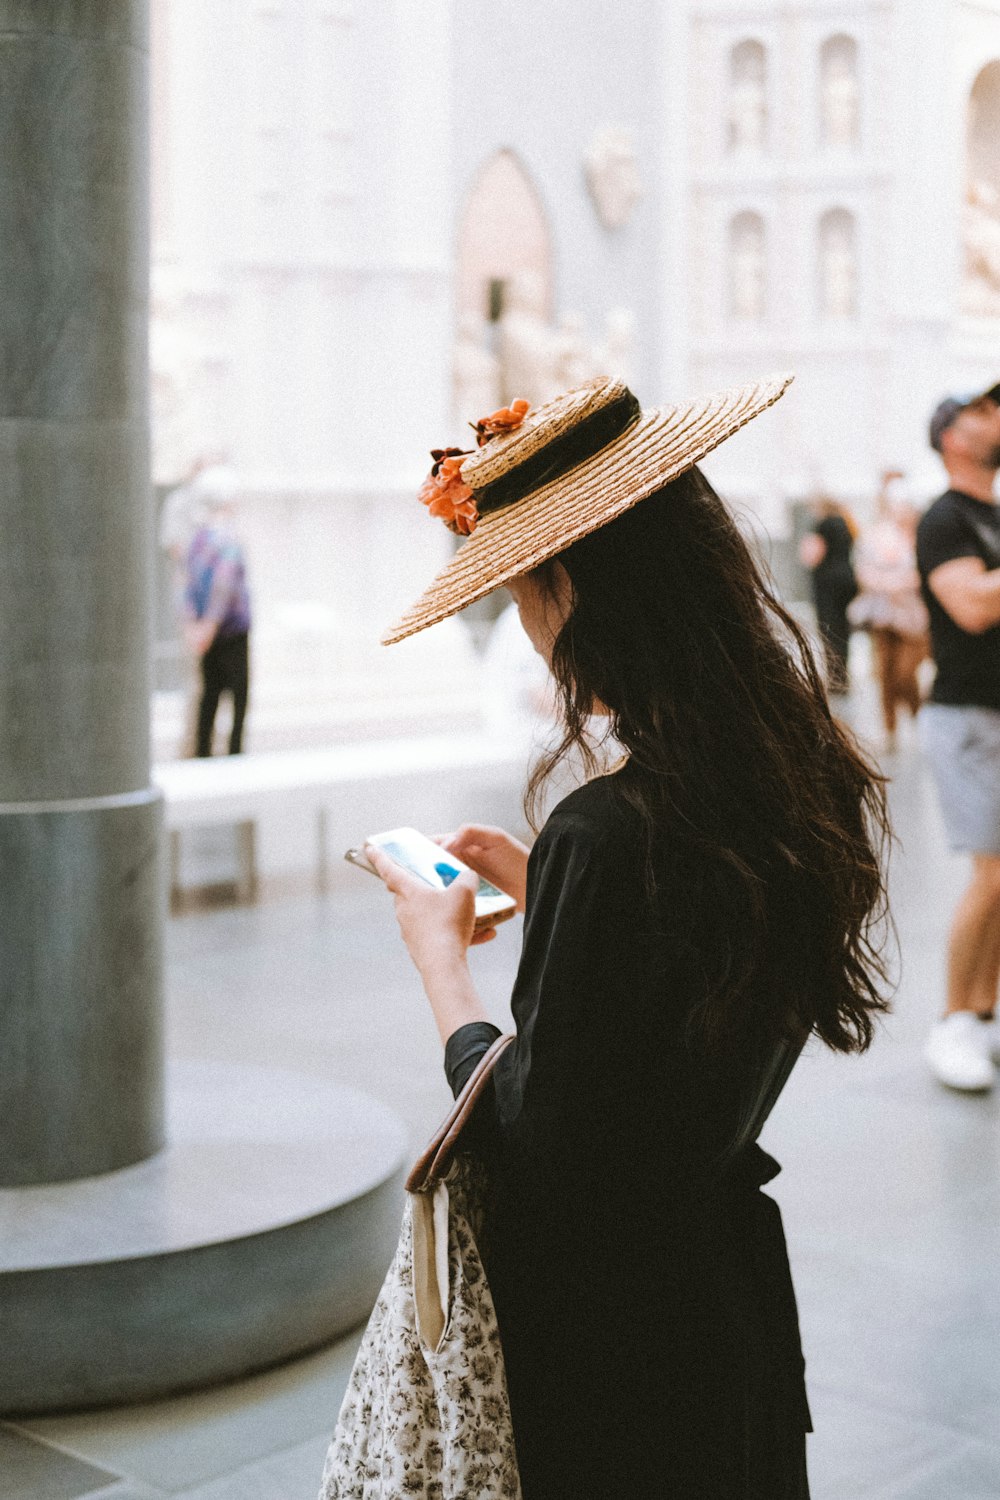 Eine Frau mit Hut und Handy in der Hand